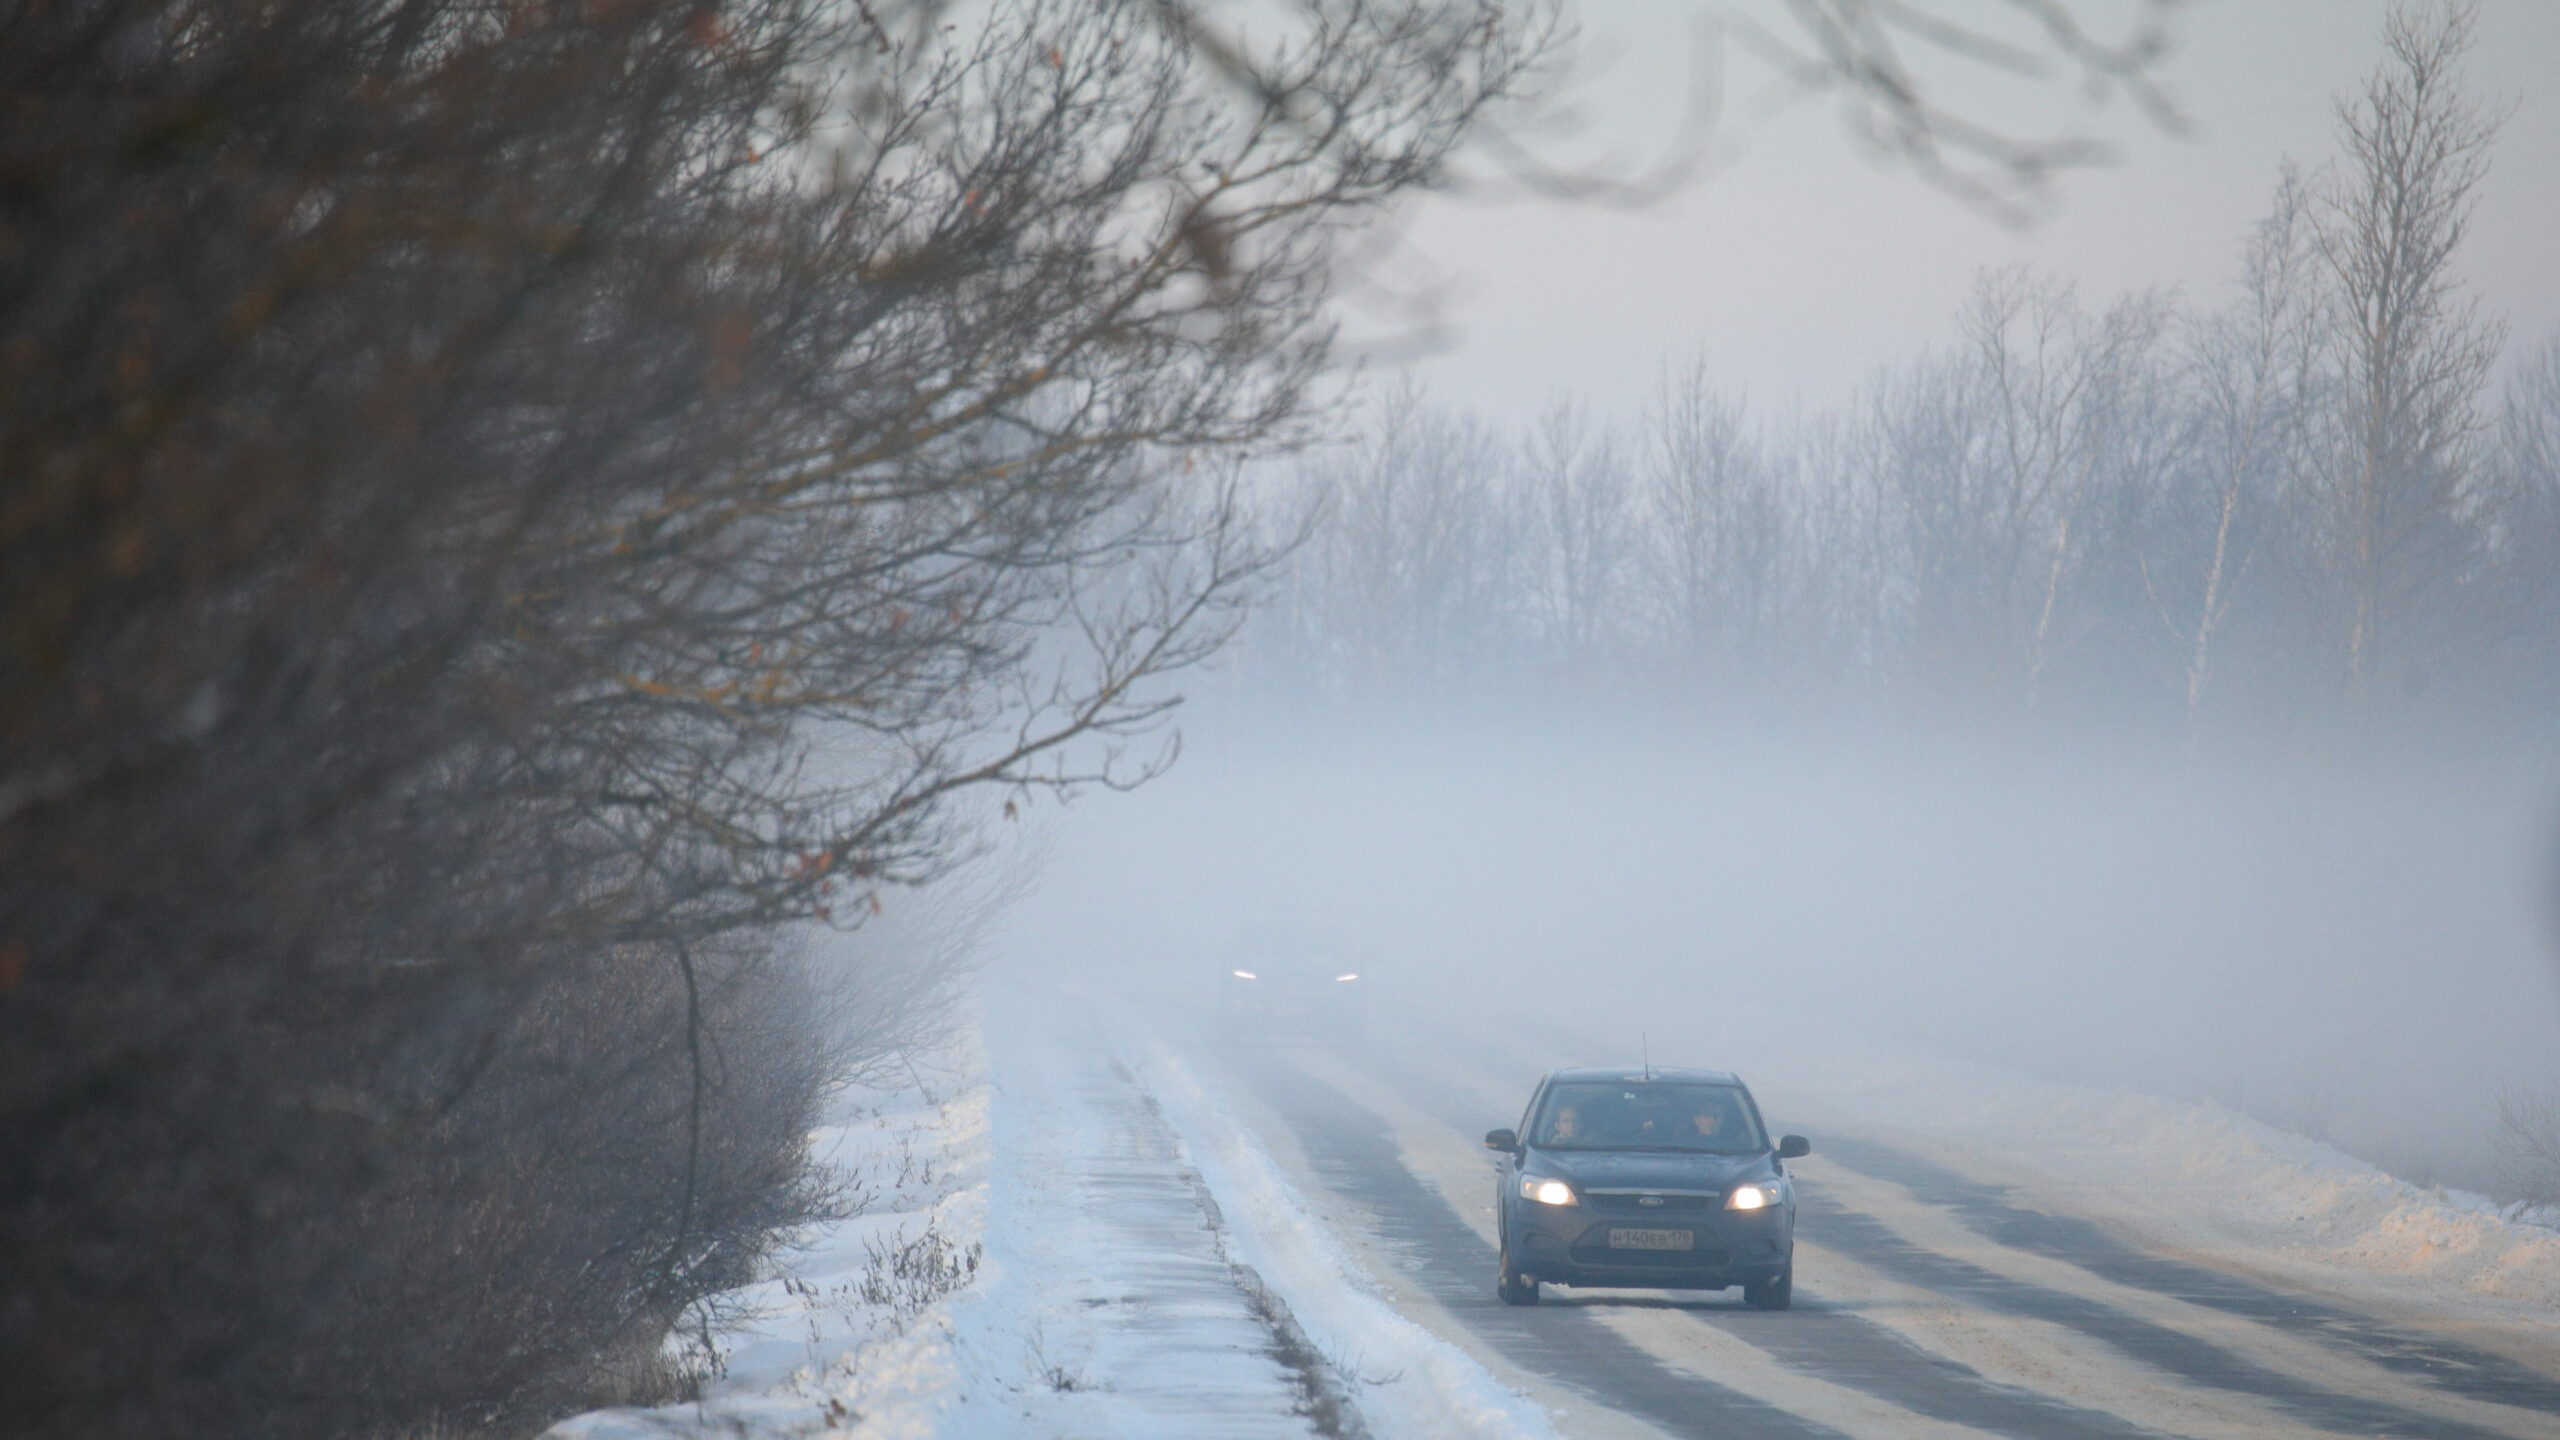 Текущая погода в Петербурге характерна для середины января